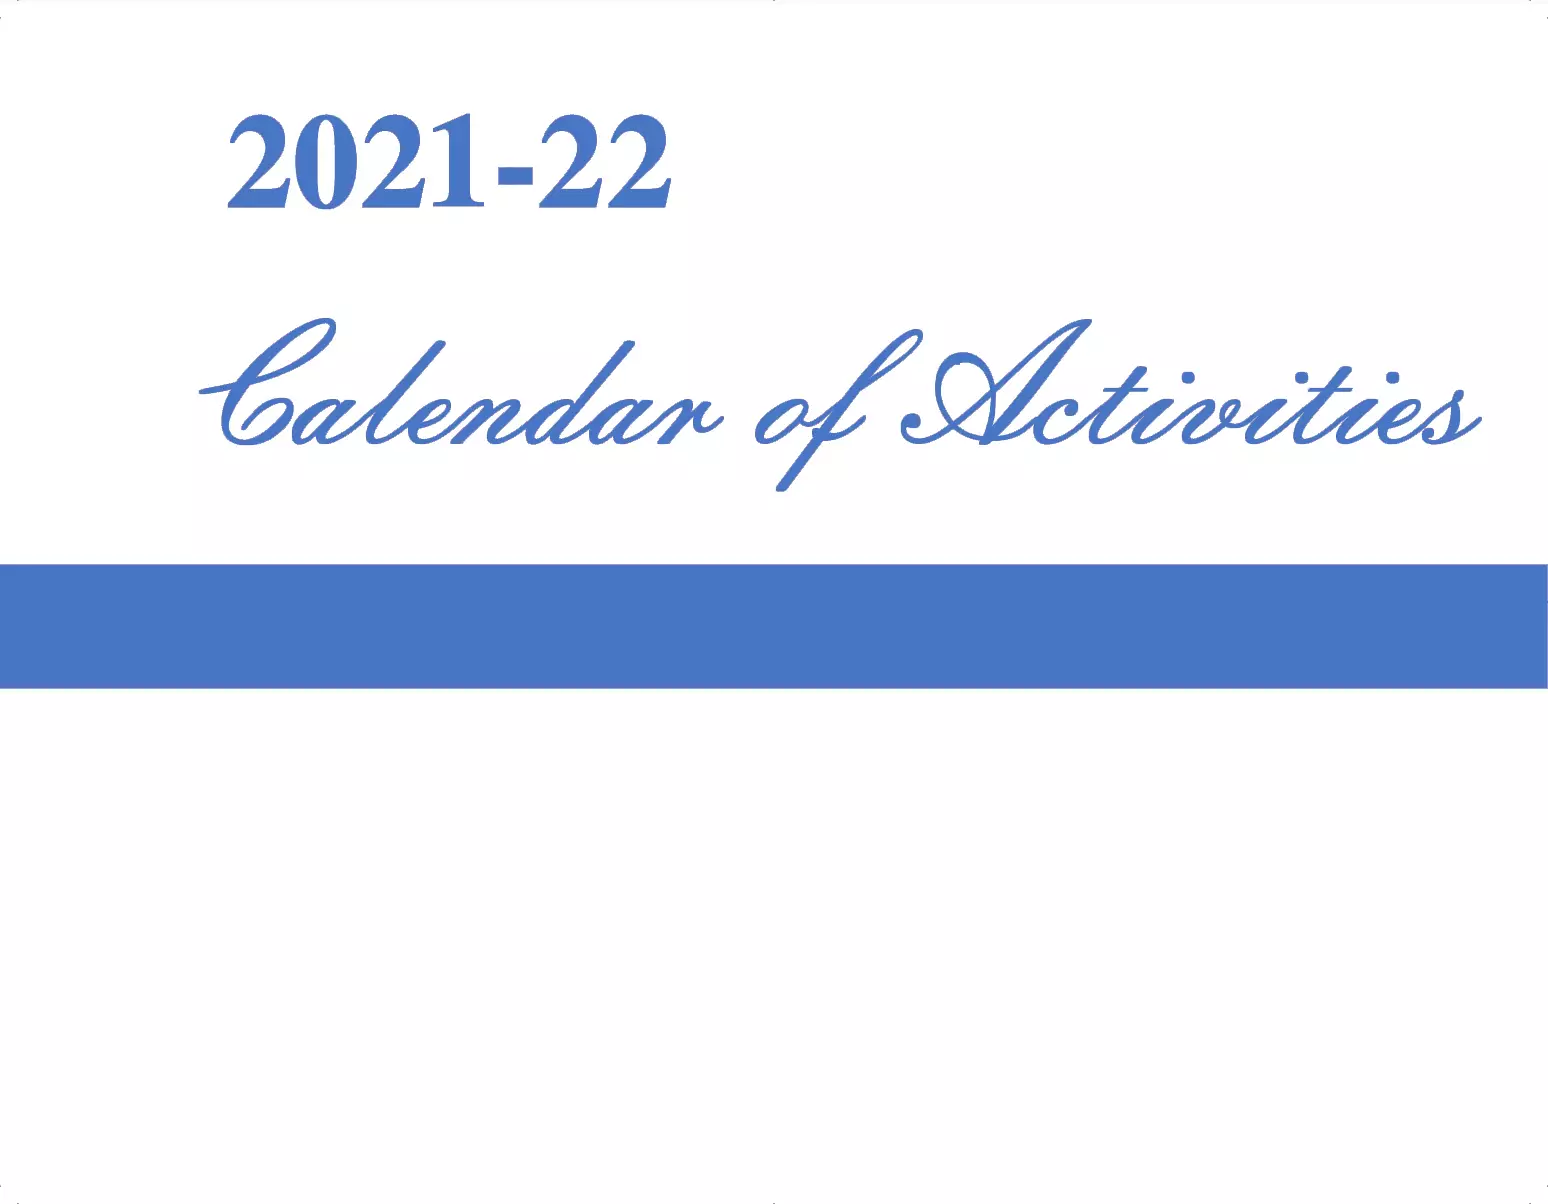 CALENDAR OF ACTIVITIES, 2021-2022